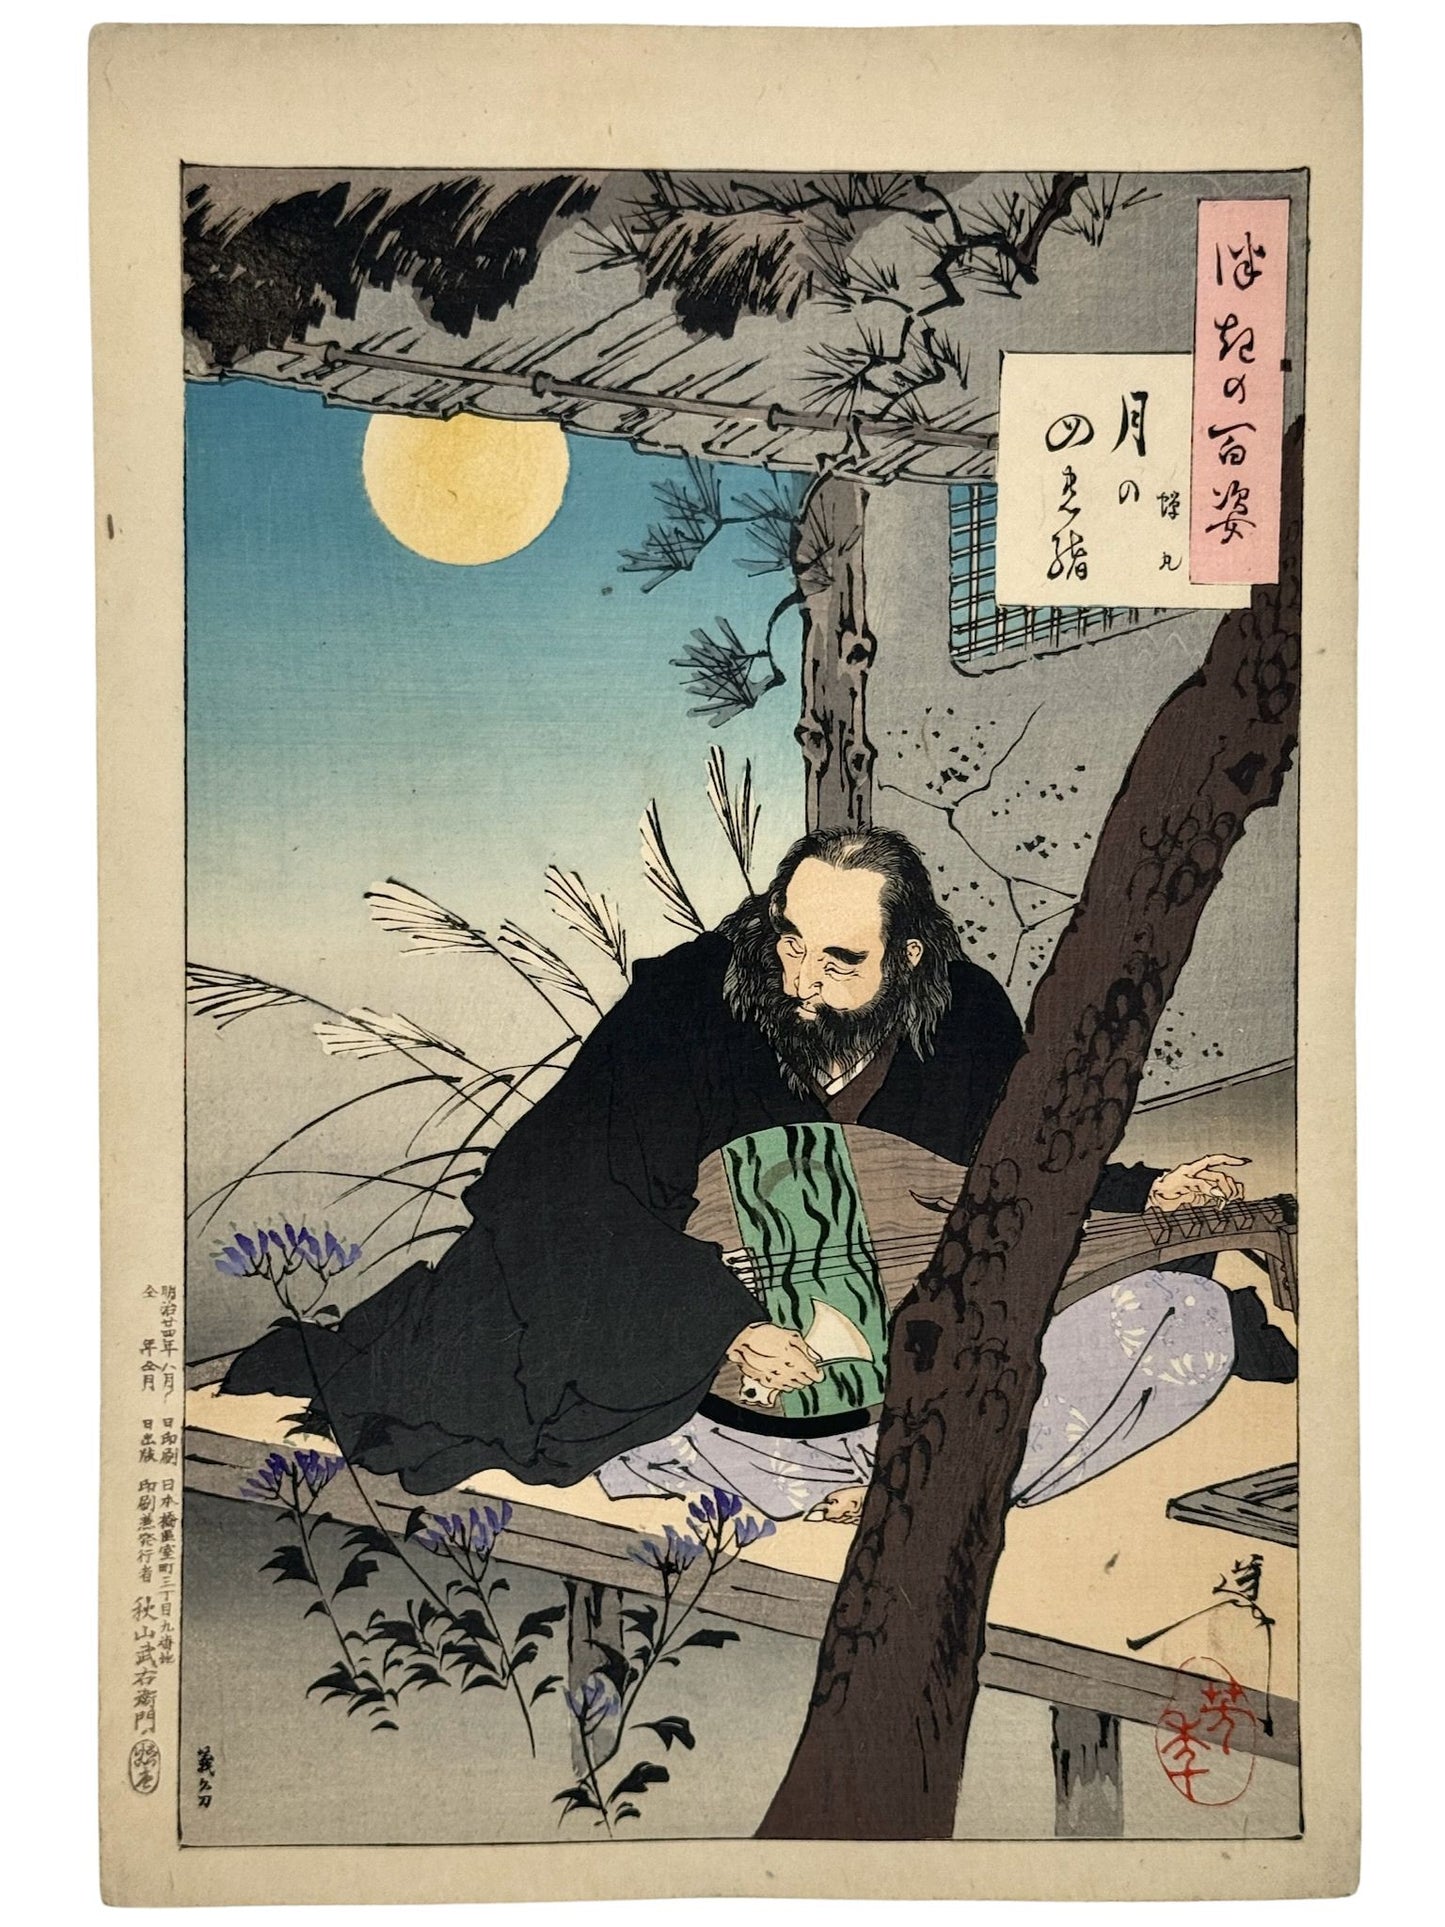 estampe japonaise de yoshitoshi, homme jouant du luth sur terrasse, nuit, fleurs violettes